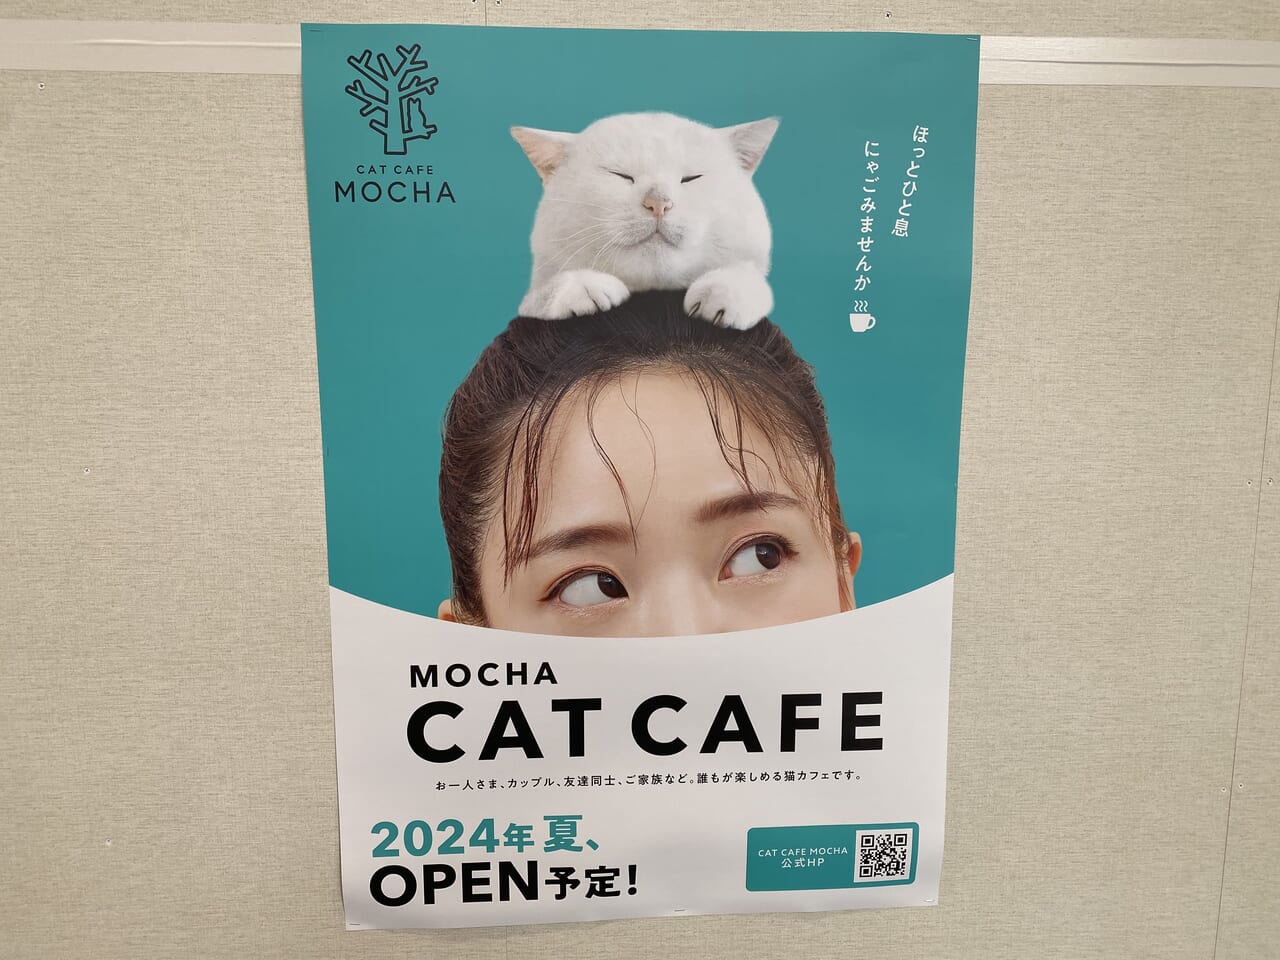 CAT CAFE MOCHAのオープンを予告する張り紙